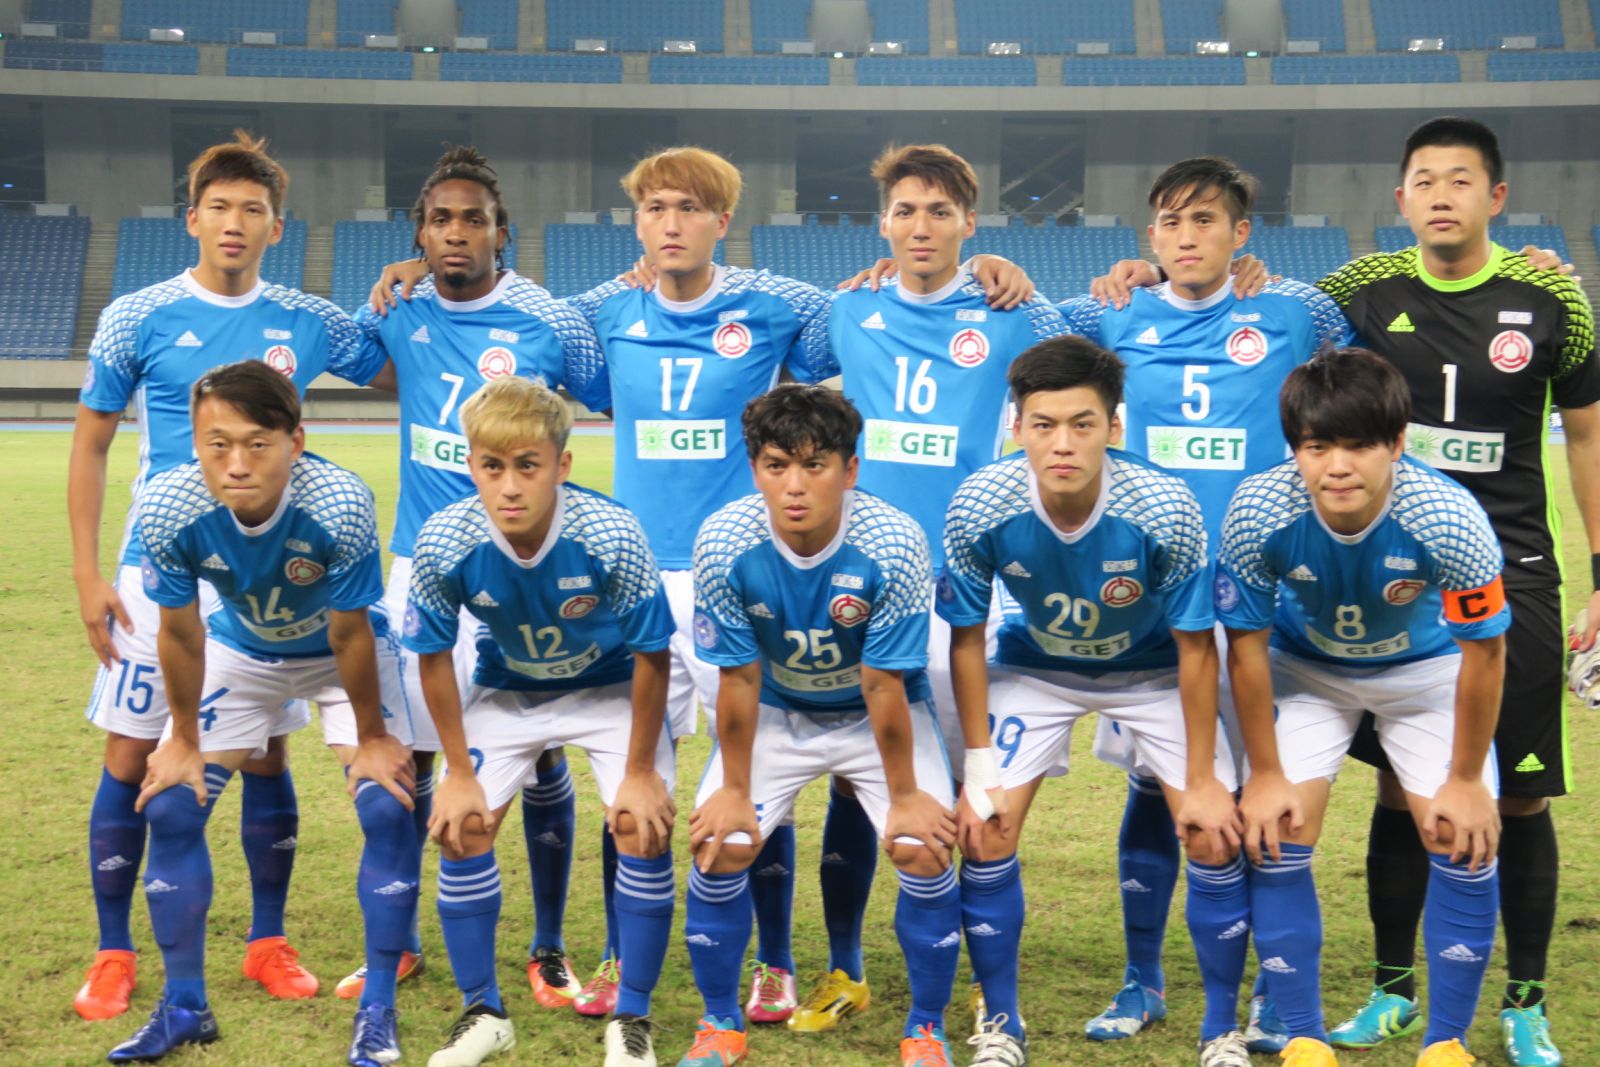 大同的英籍外援馬克(後排左2)(首役表現出色。中華民國足球協會提供